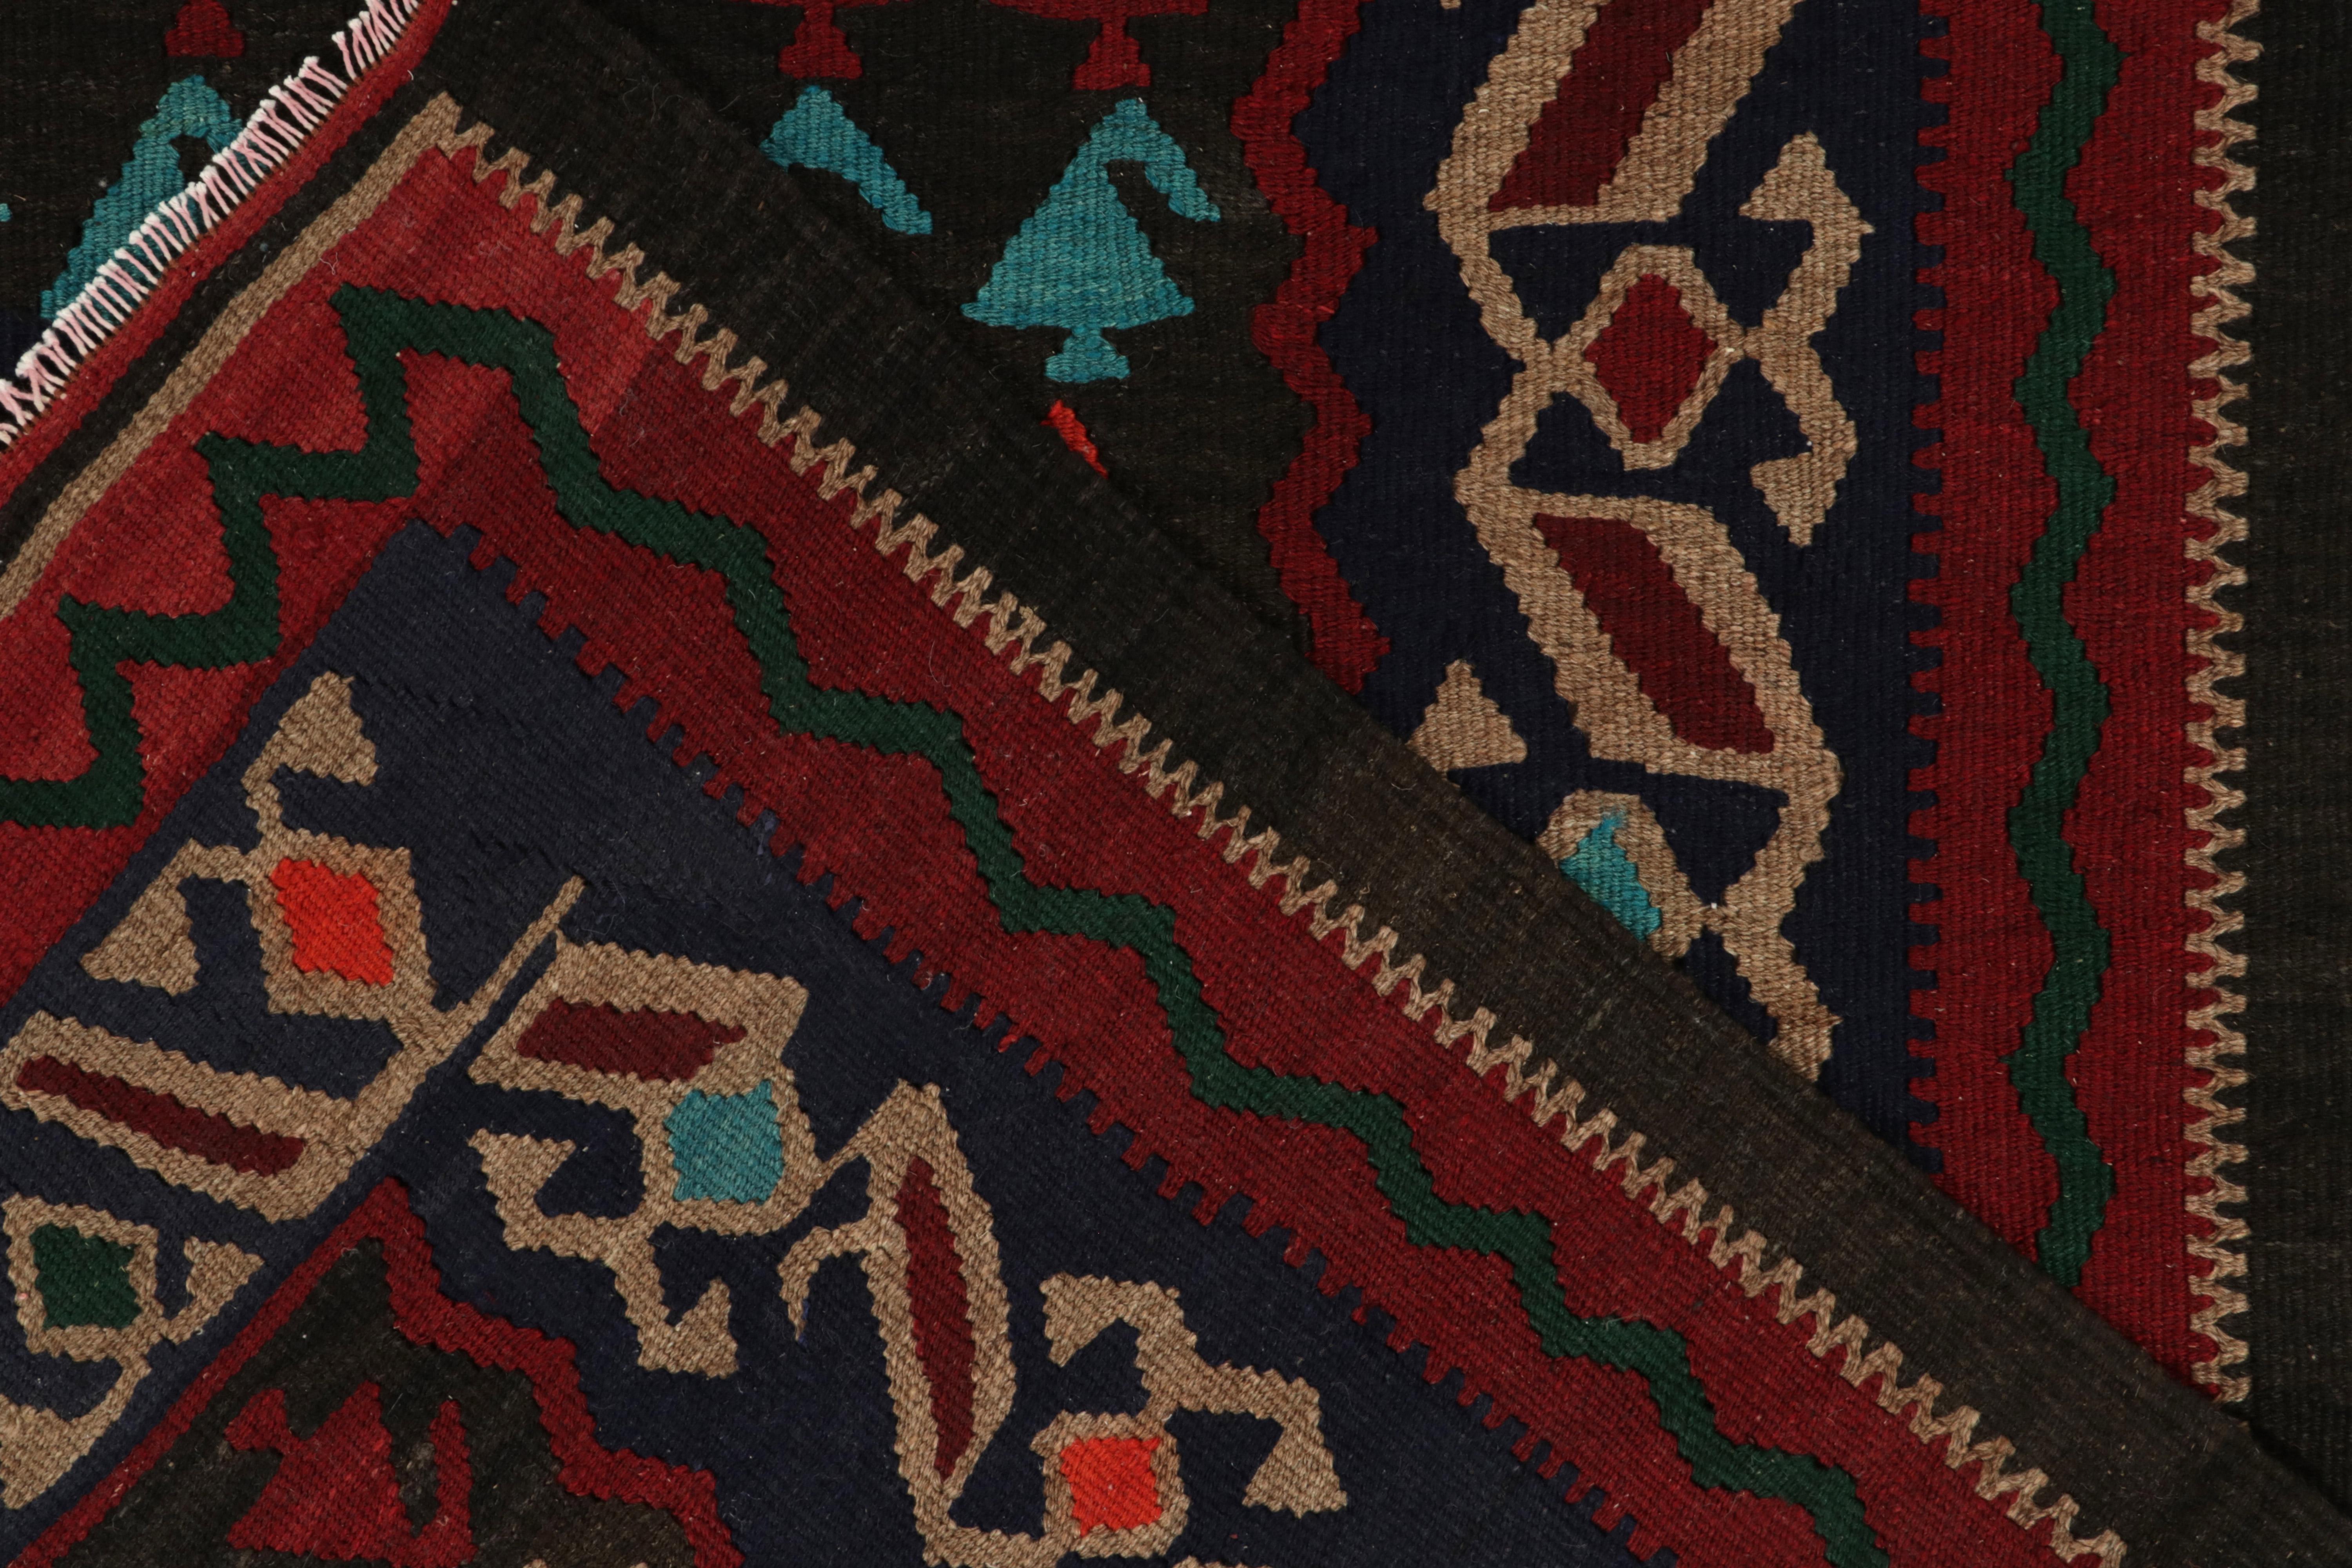 Wool Vintage Turkish Kilim Rug in Red, Beige-Brown & MultiHued Tribal by Rug & Kilim For Sale